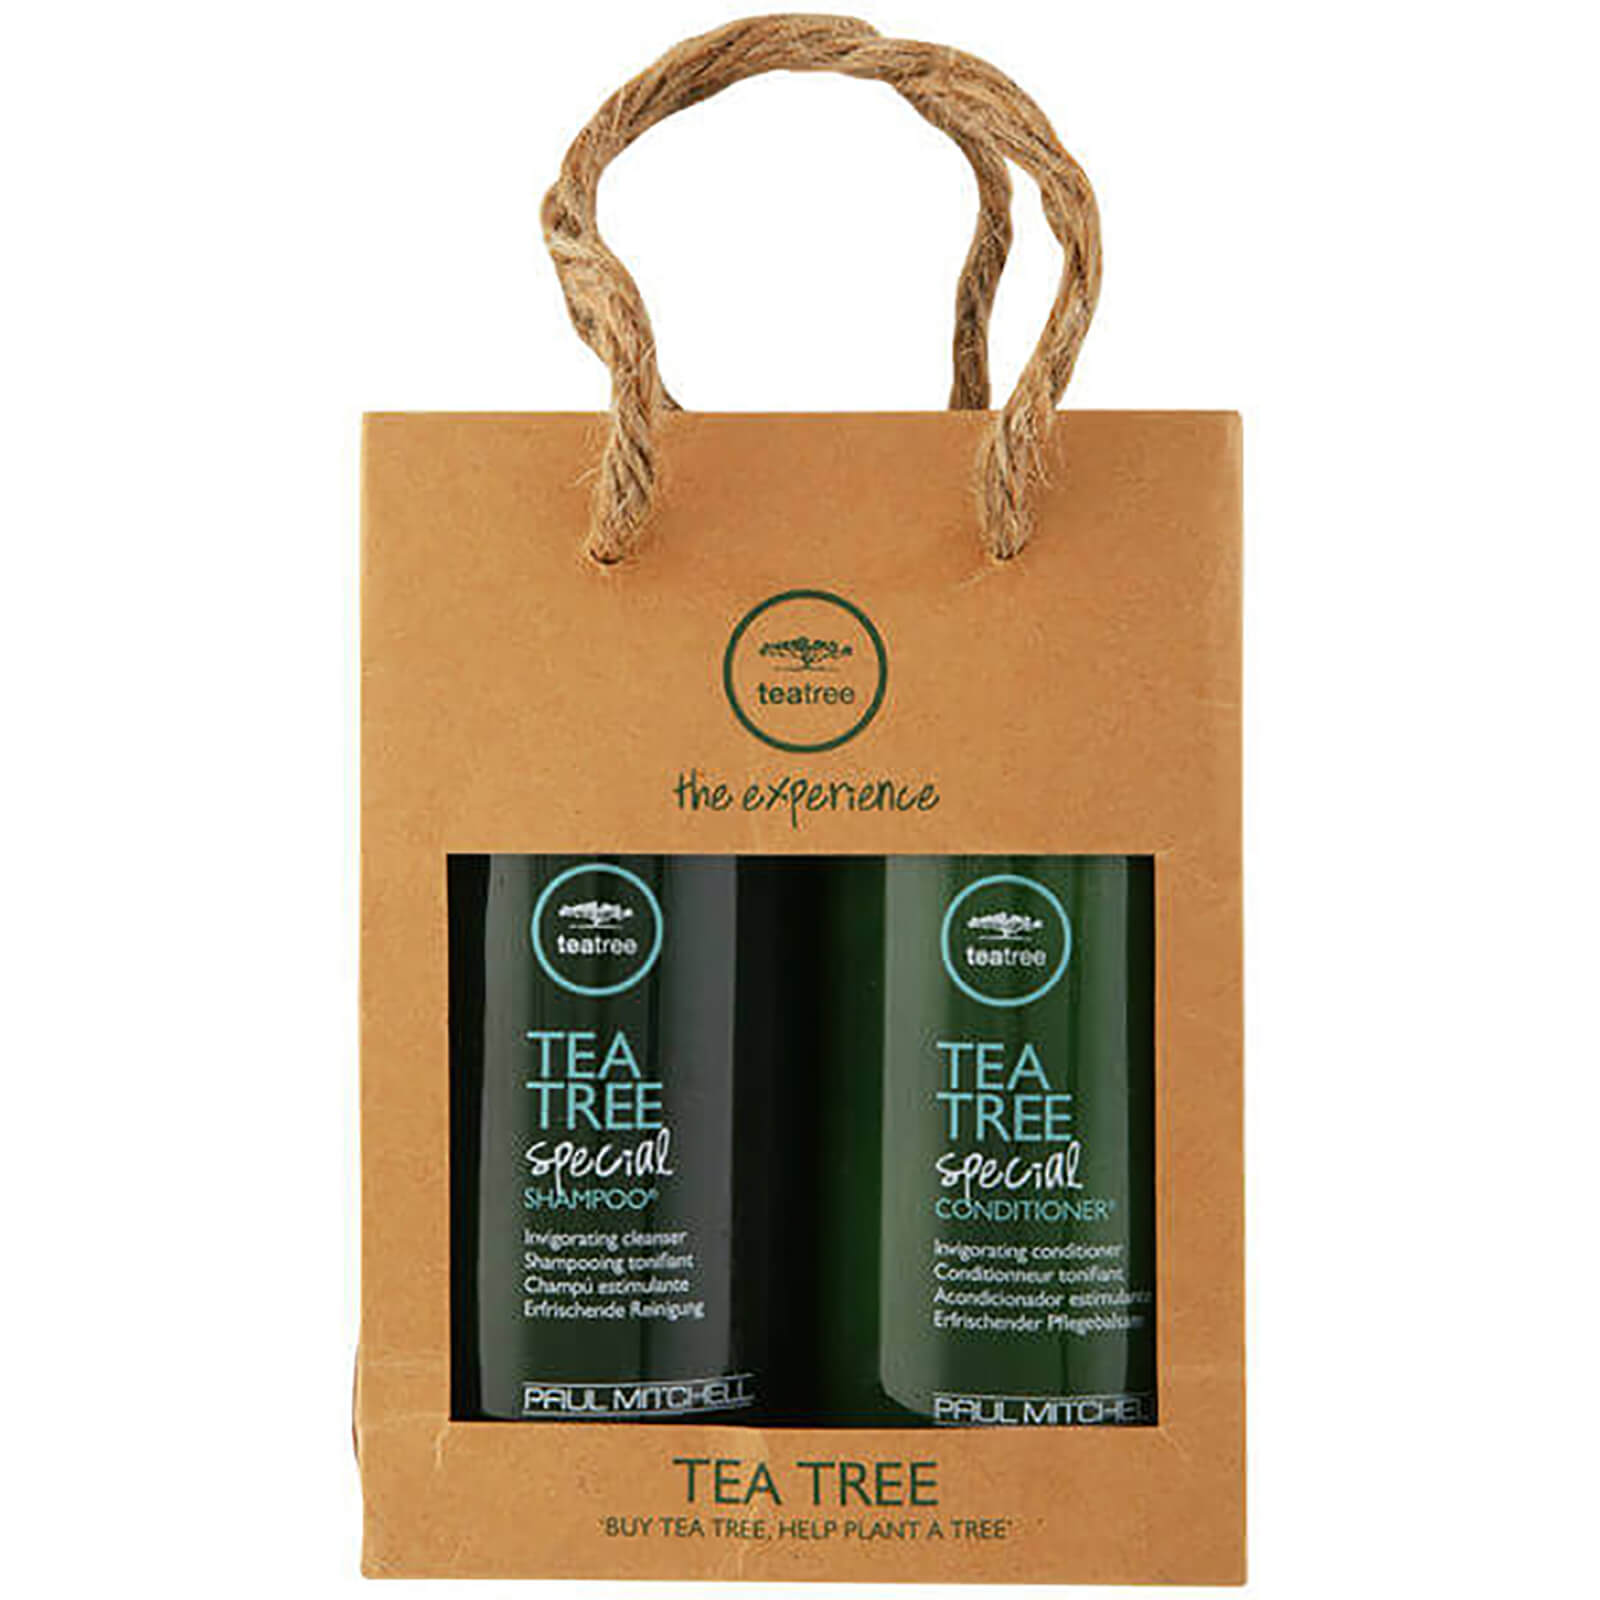 Pack champú y acondicionador hidratante Paul Mitchell Green Tea Tree (2 productos)